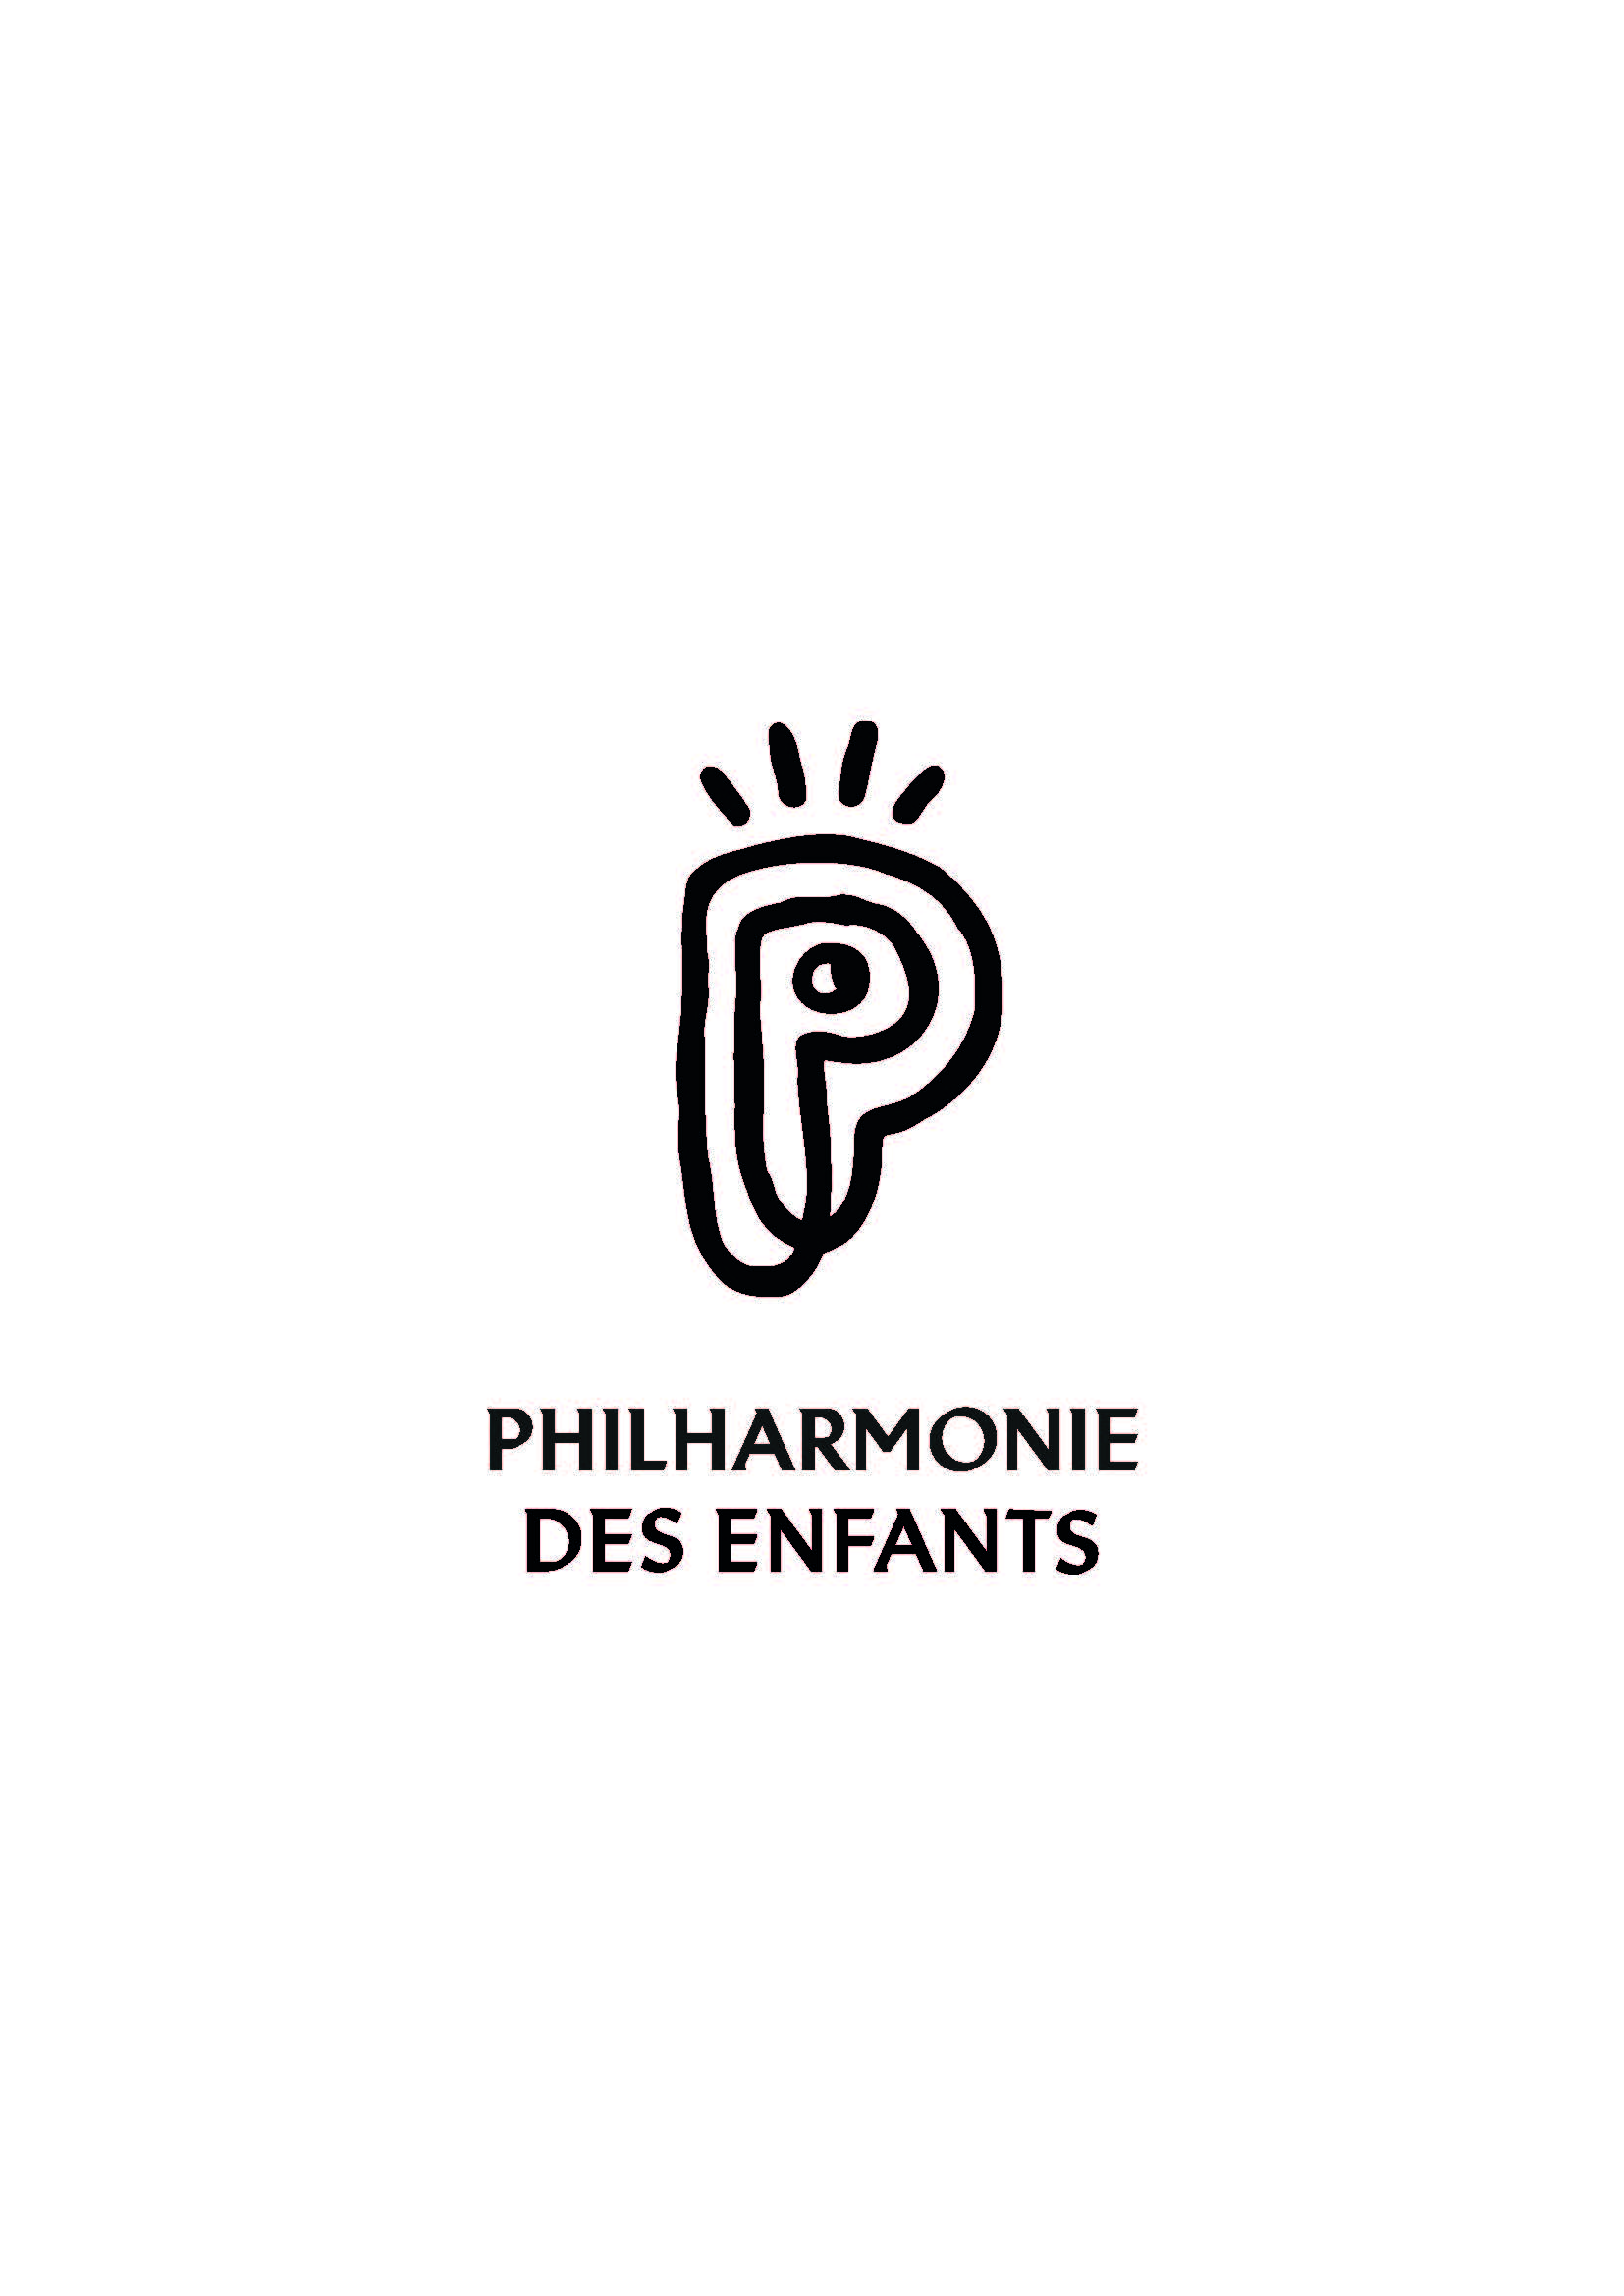 logo de la philharmonie des enfants